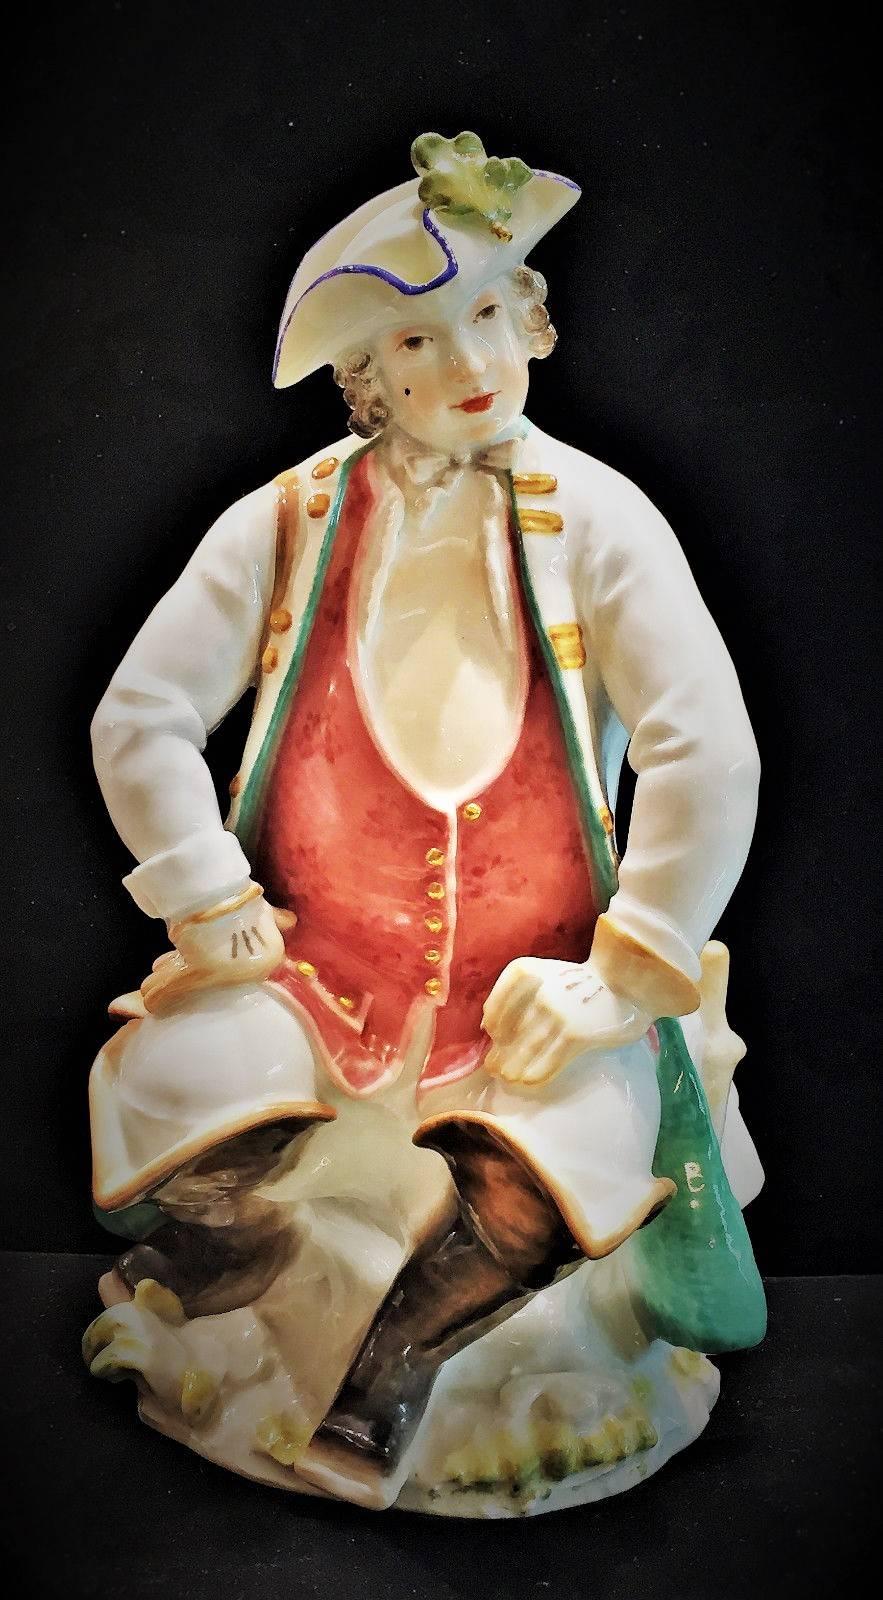 Nous présentons ici l'une des plus belles figurines en porcelaine de Meissen de la période Art déco, réalisée par le professeur Paul Scheurich (1883-1945), qui est reconnu comme l'un des plus grands modeleurs du XXe siècle. L'arrière de la base